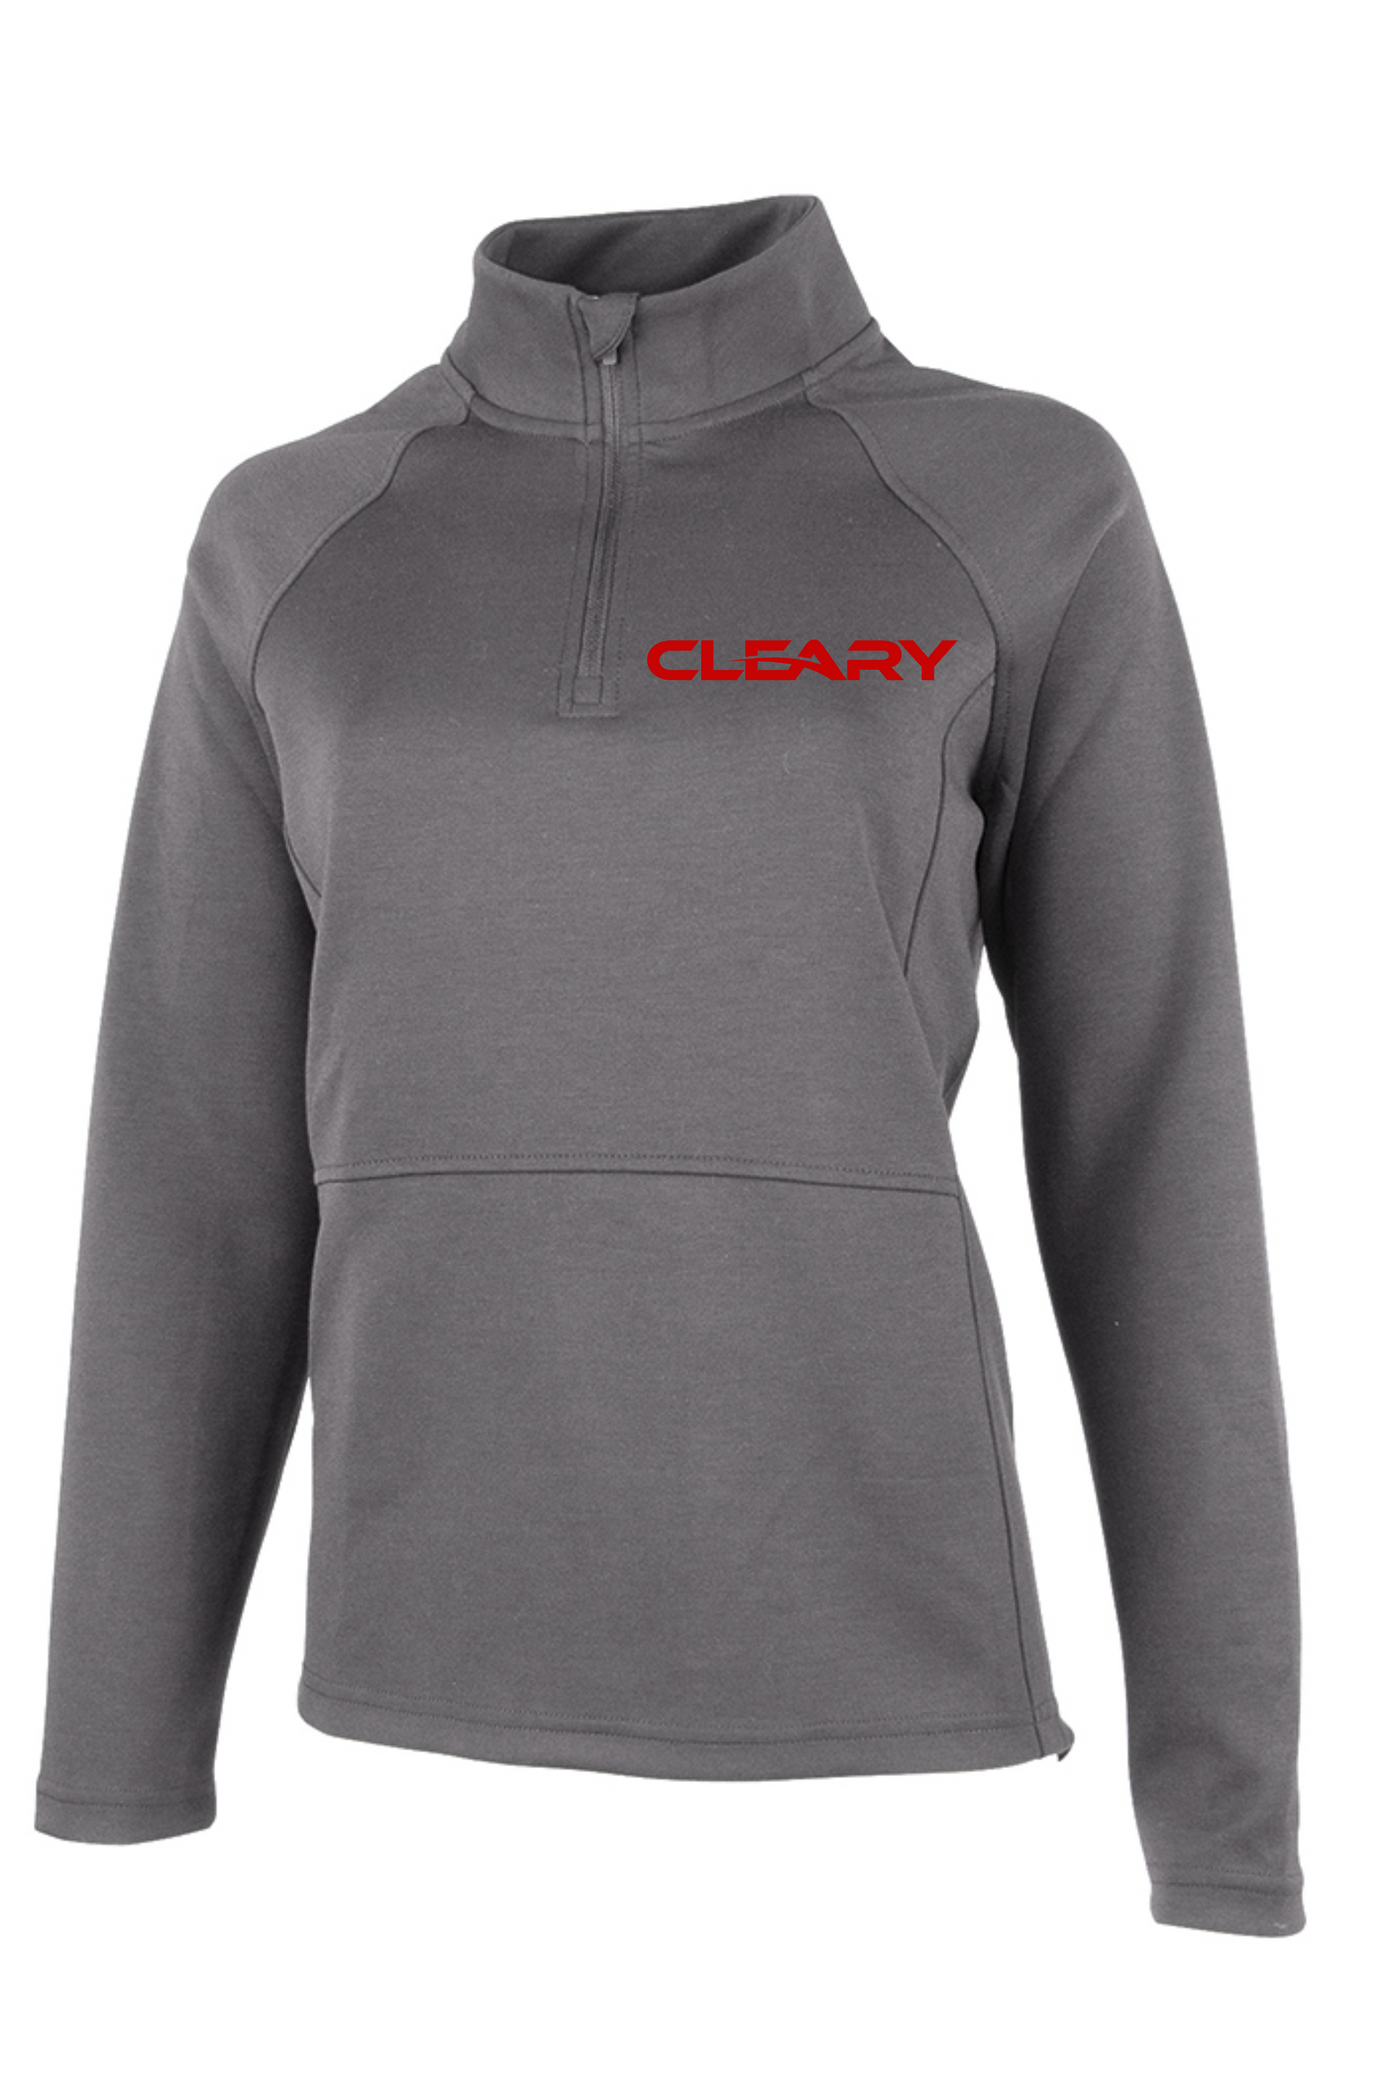 Cleary's Women's Seaport Quarter Zip Grey